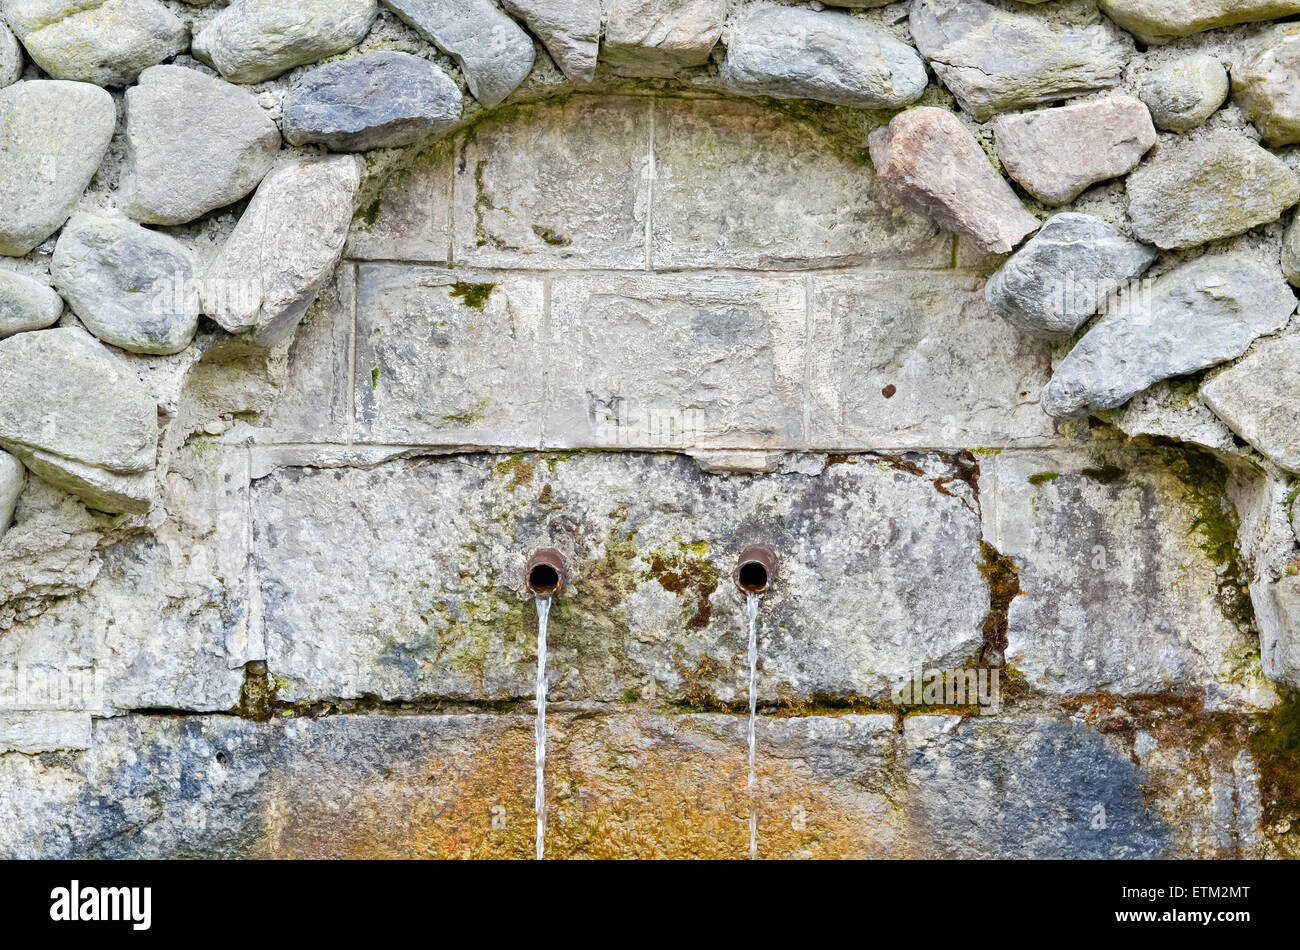 Gros plan du fontaine d'eau potable avec l'eau de source naturelle Banque D'Images